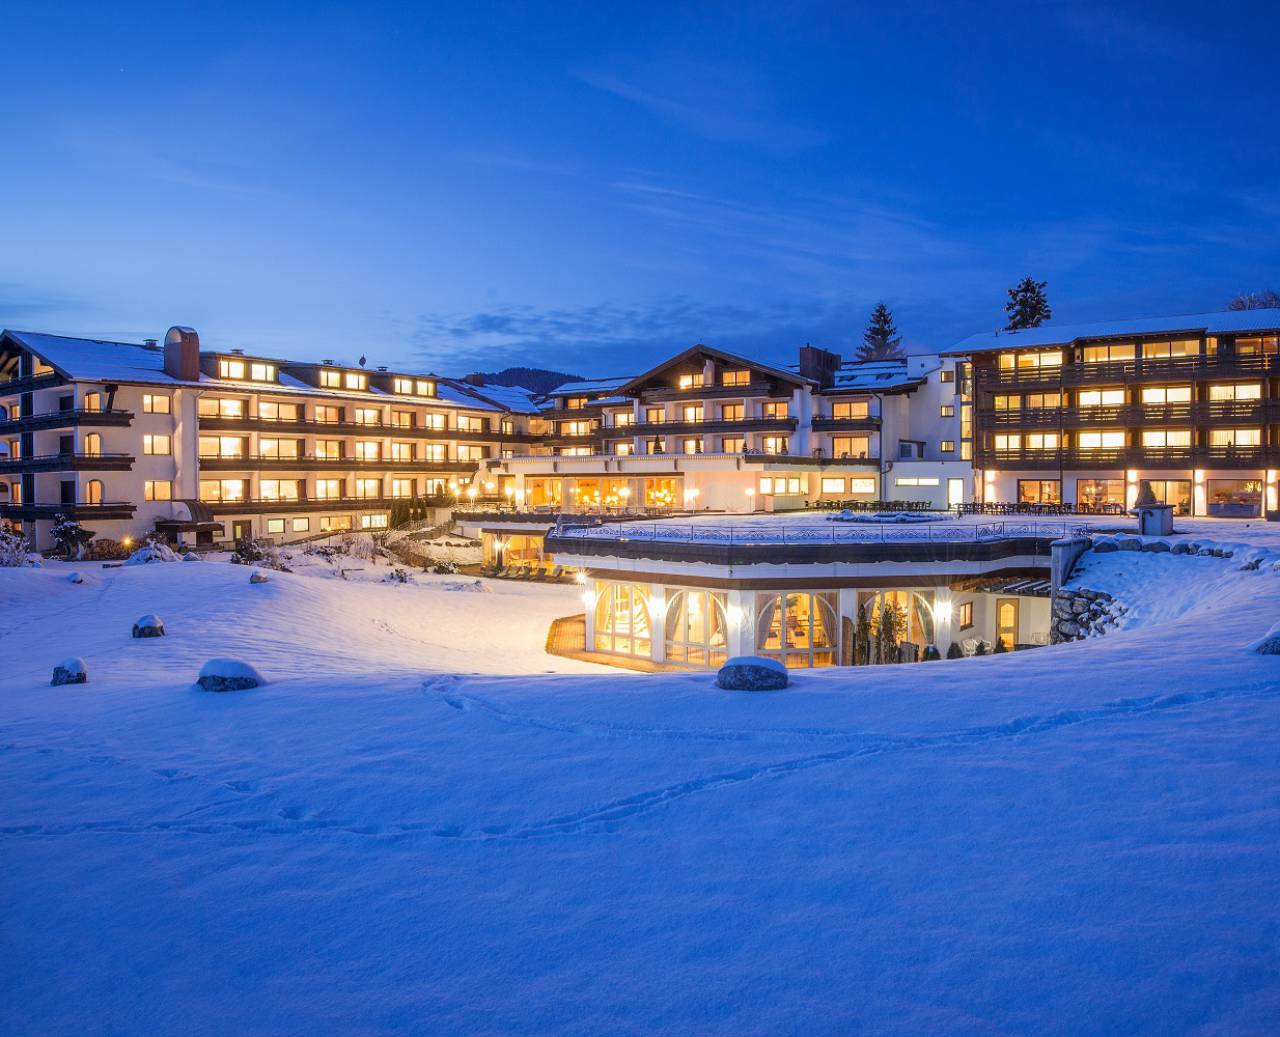 Schüles Hotel in Oberstdorf in Abenddämmerung im Winter